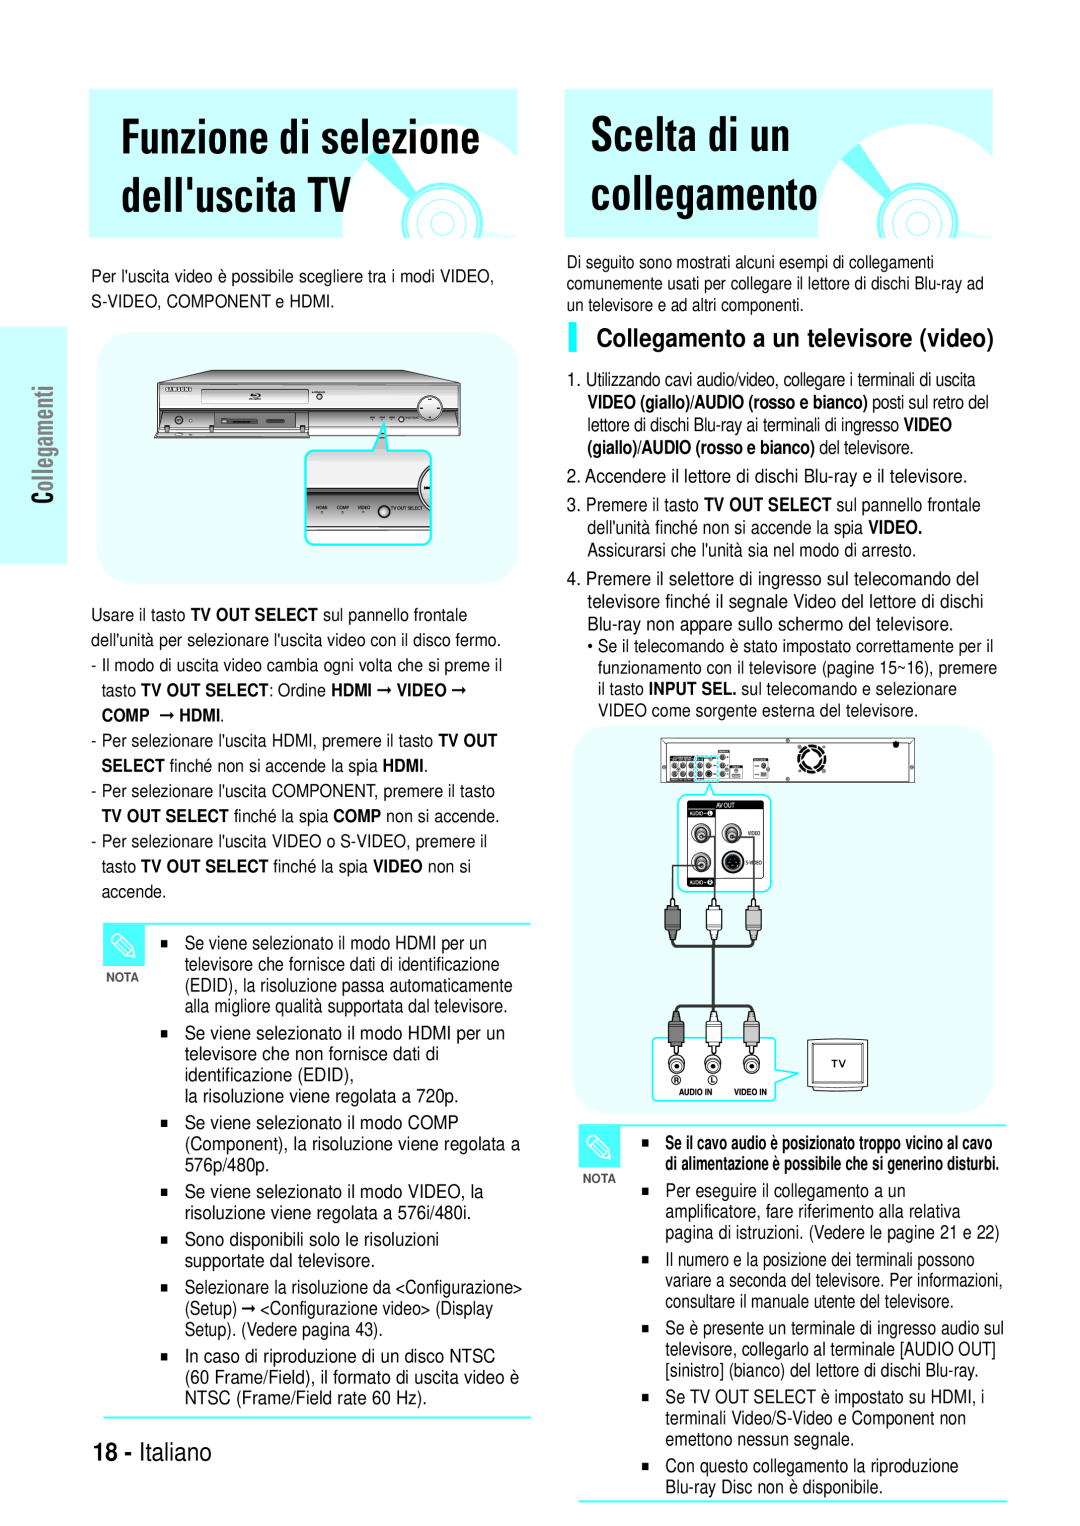 Samsung BD-P1000/XEL, BD-P1000/XEG Scelta di un collegamento, Funzione di selezione delluscita TV, Italiano, Collegamenti 